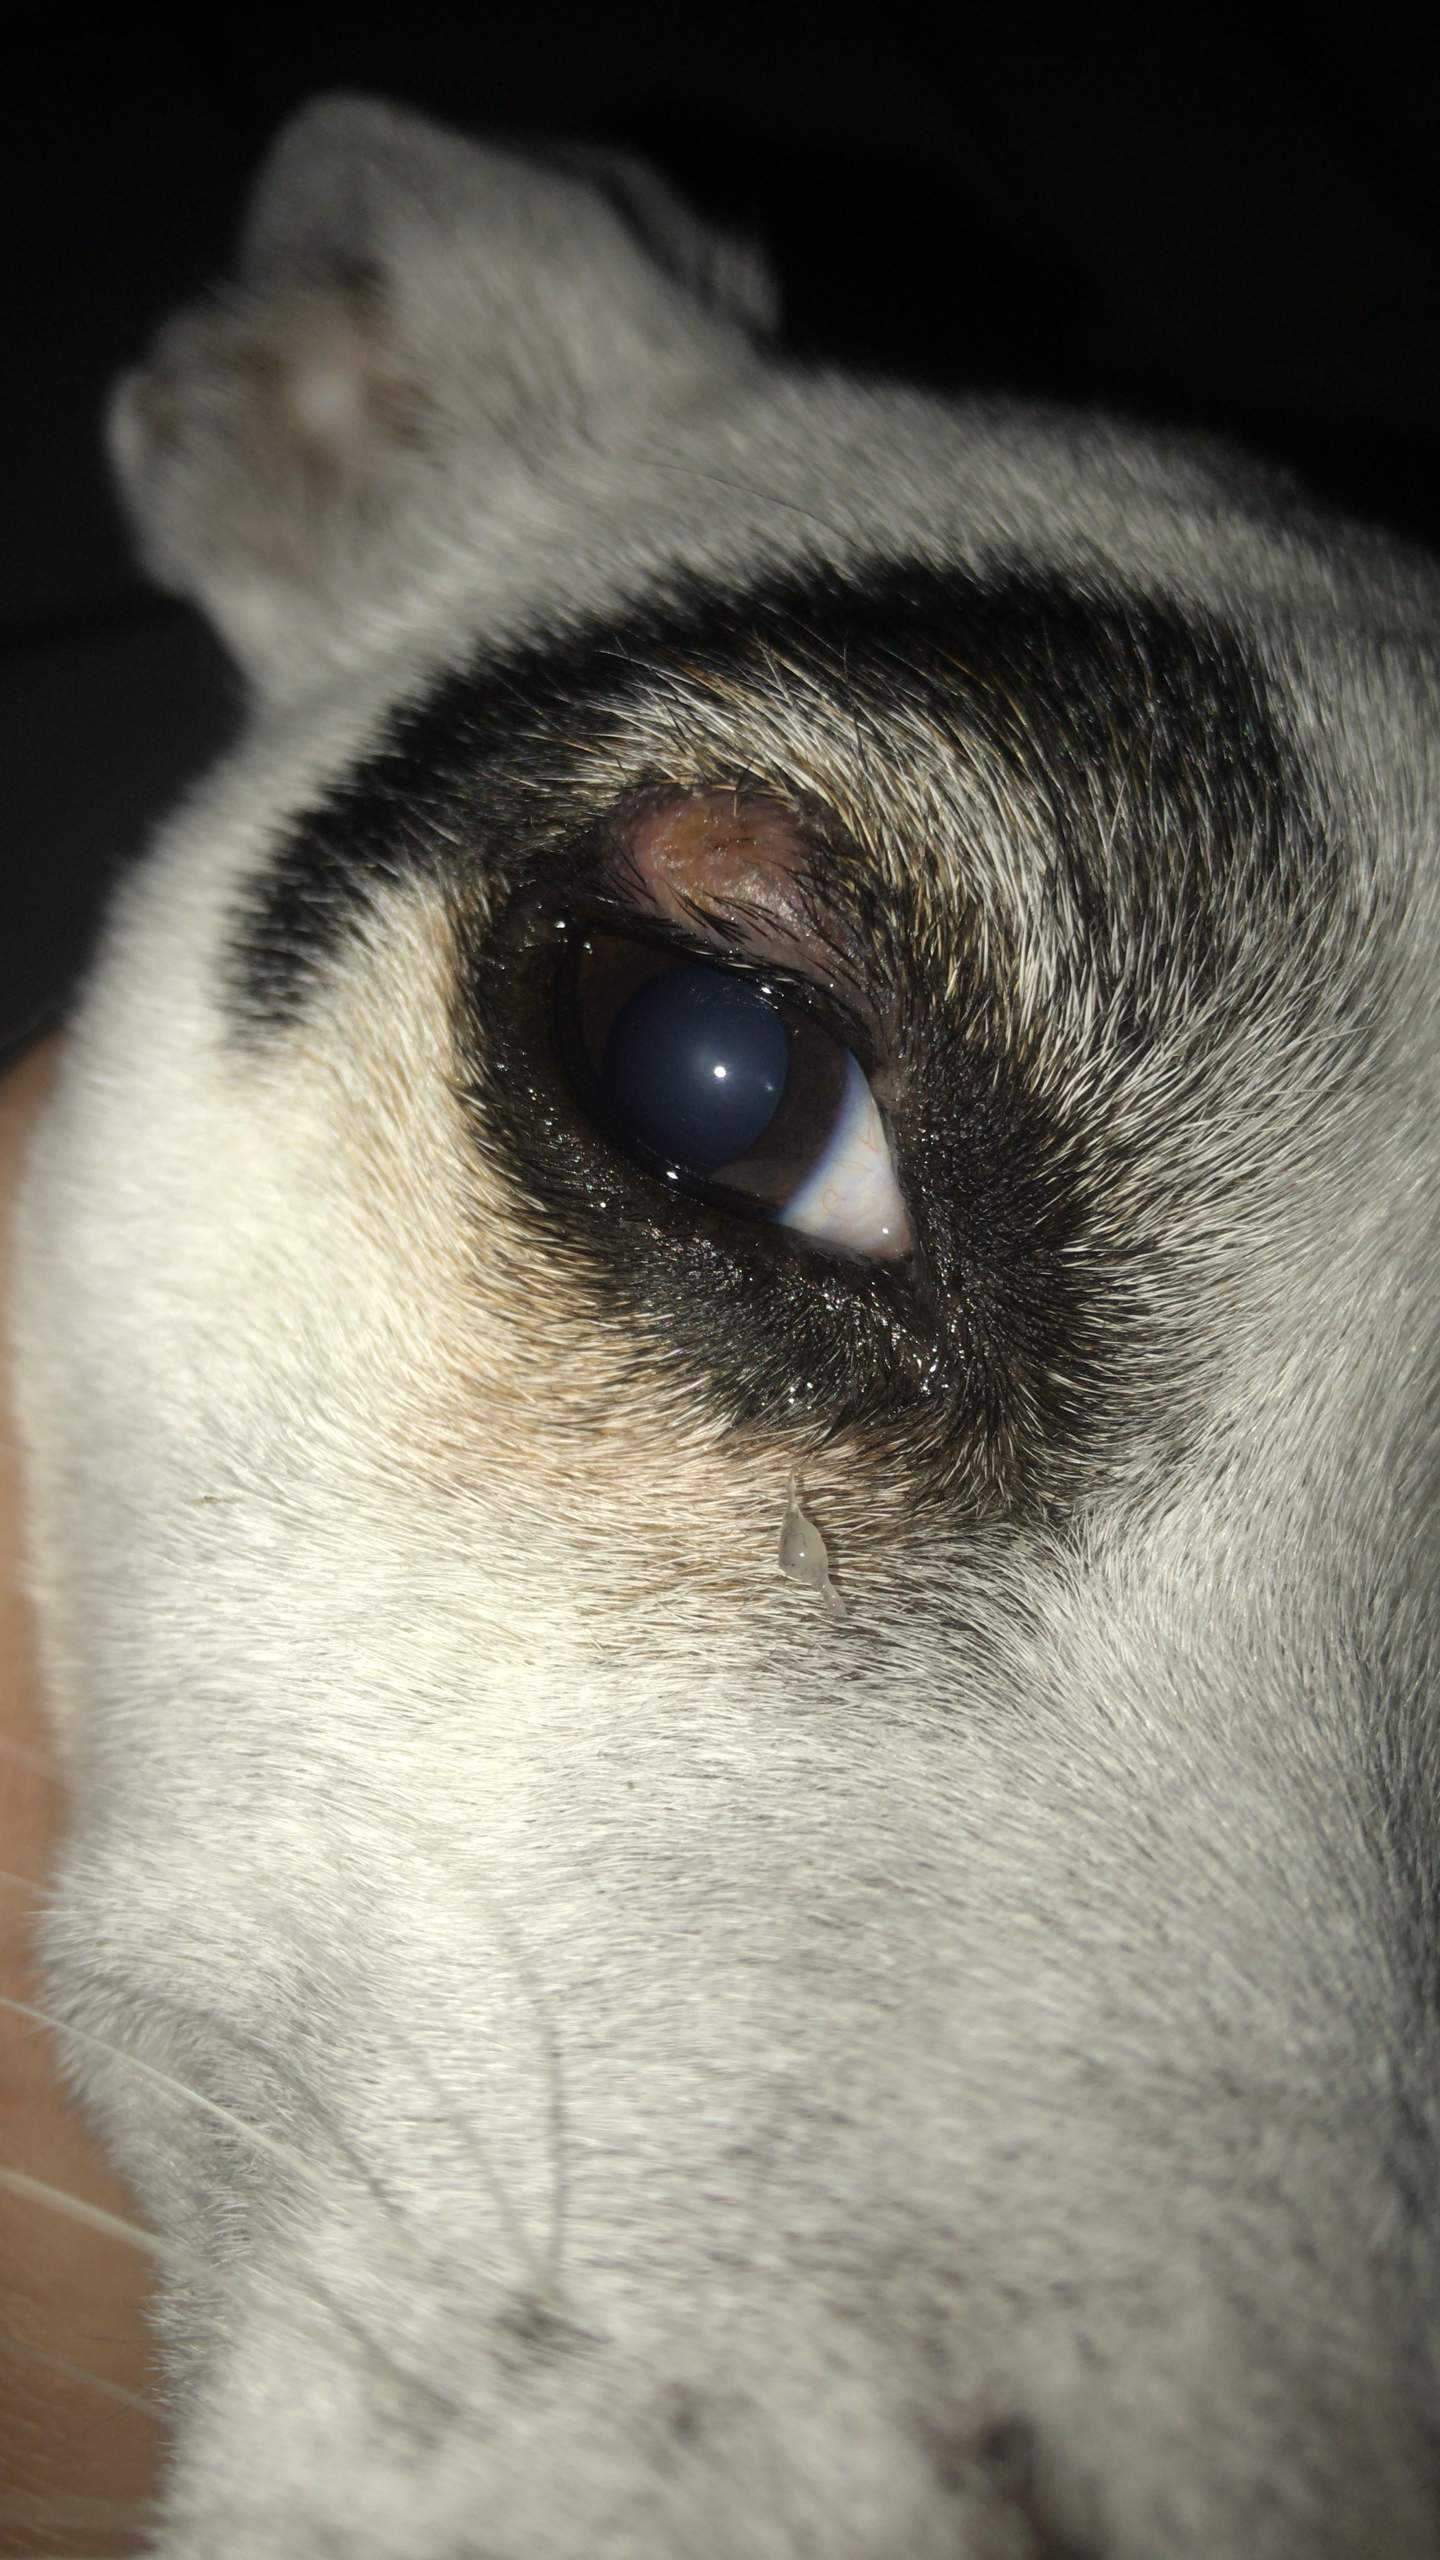 Hund hat irgendwas am Auge? (Augen)